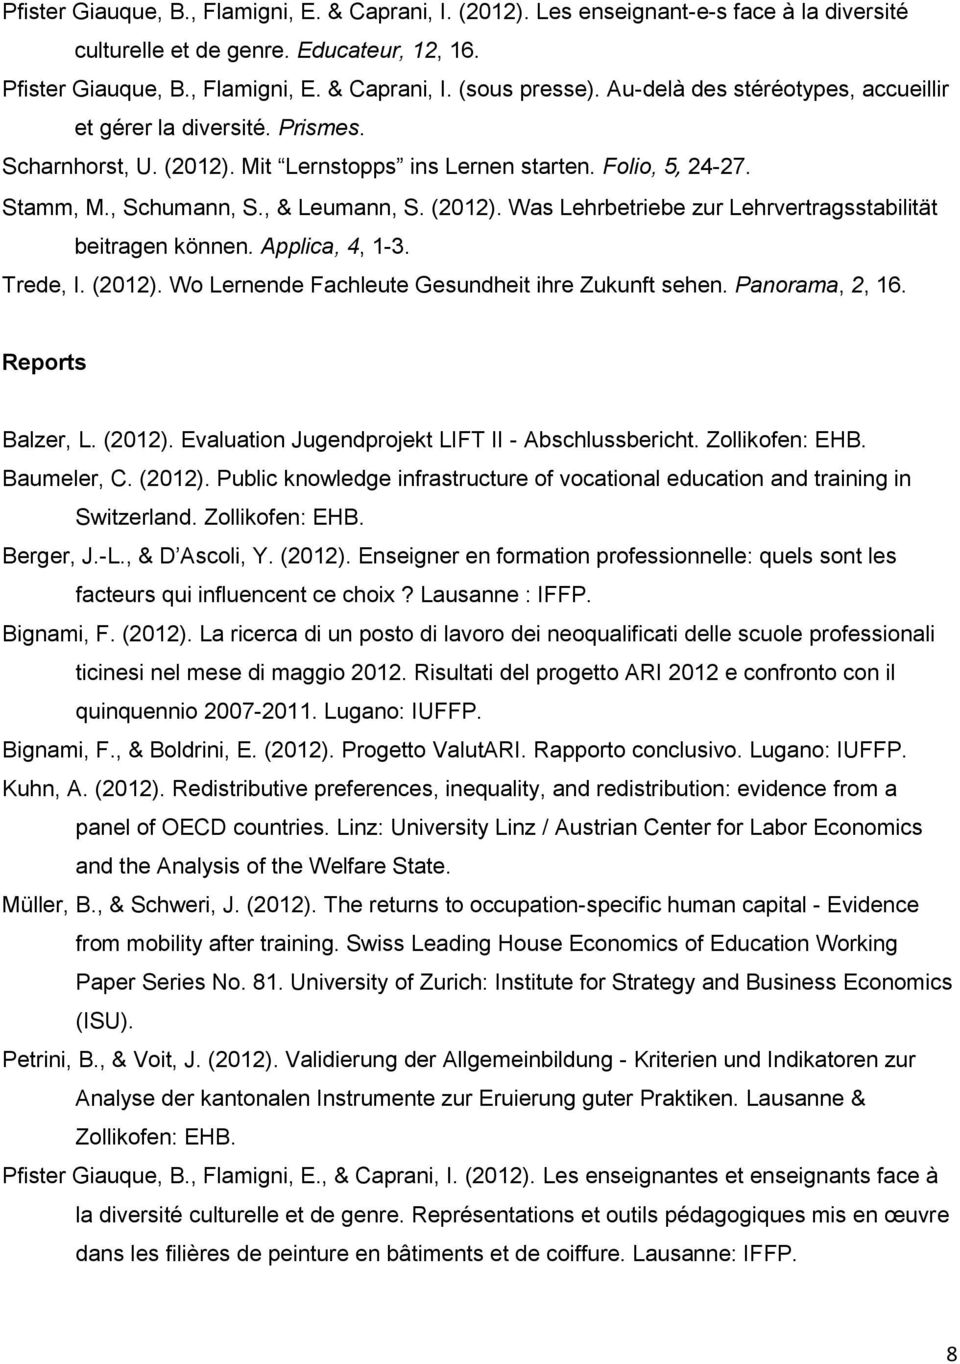 Applica, 4, 1-3. Trede, I. (2012). Wo Lernende Fachleute Gesundheit ihre Zukunft sehen. Panorama, 2, 16. Reports Balzer, L. (2012). Evaluation Jugendprojekt LIFT II - Abschlussbericht.